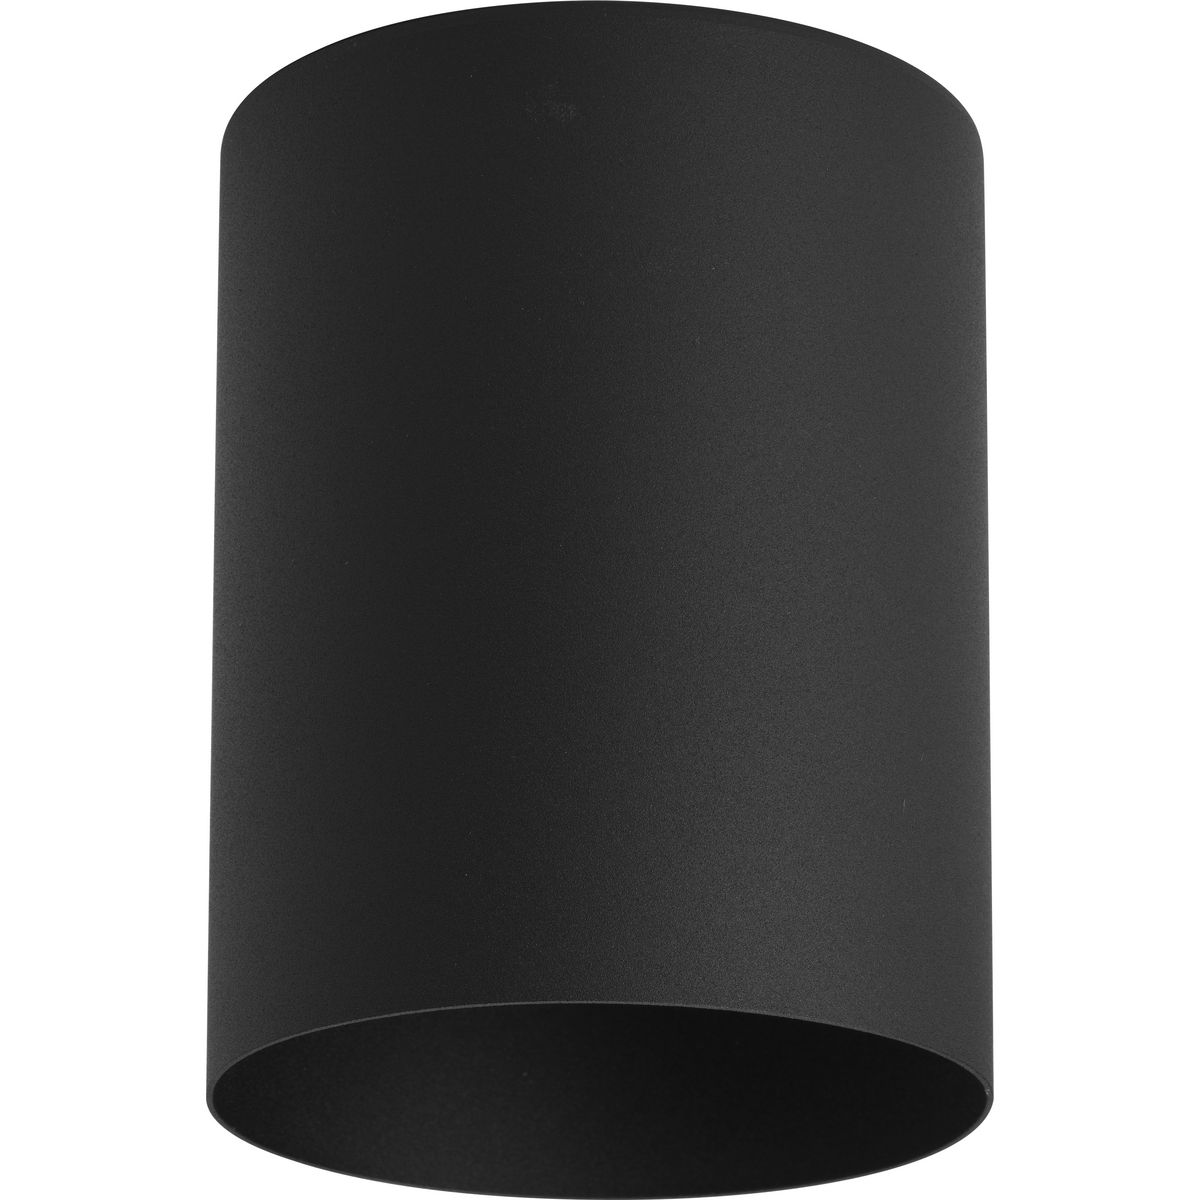 5 Black Outdoor Ceiling Mount Cylinder, Outdoor Ceiling Cylinder Lights